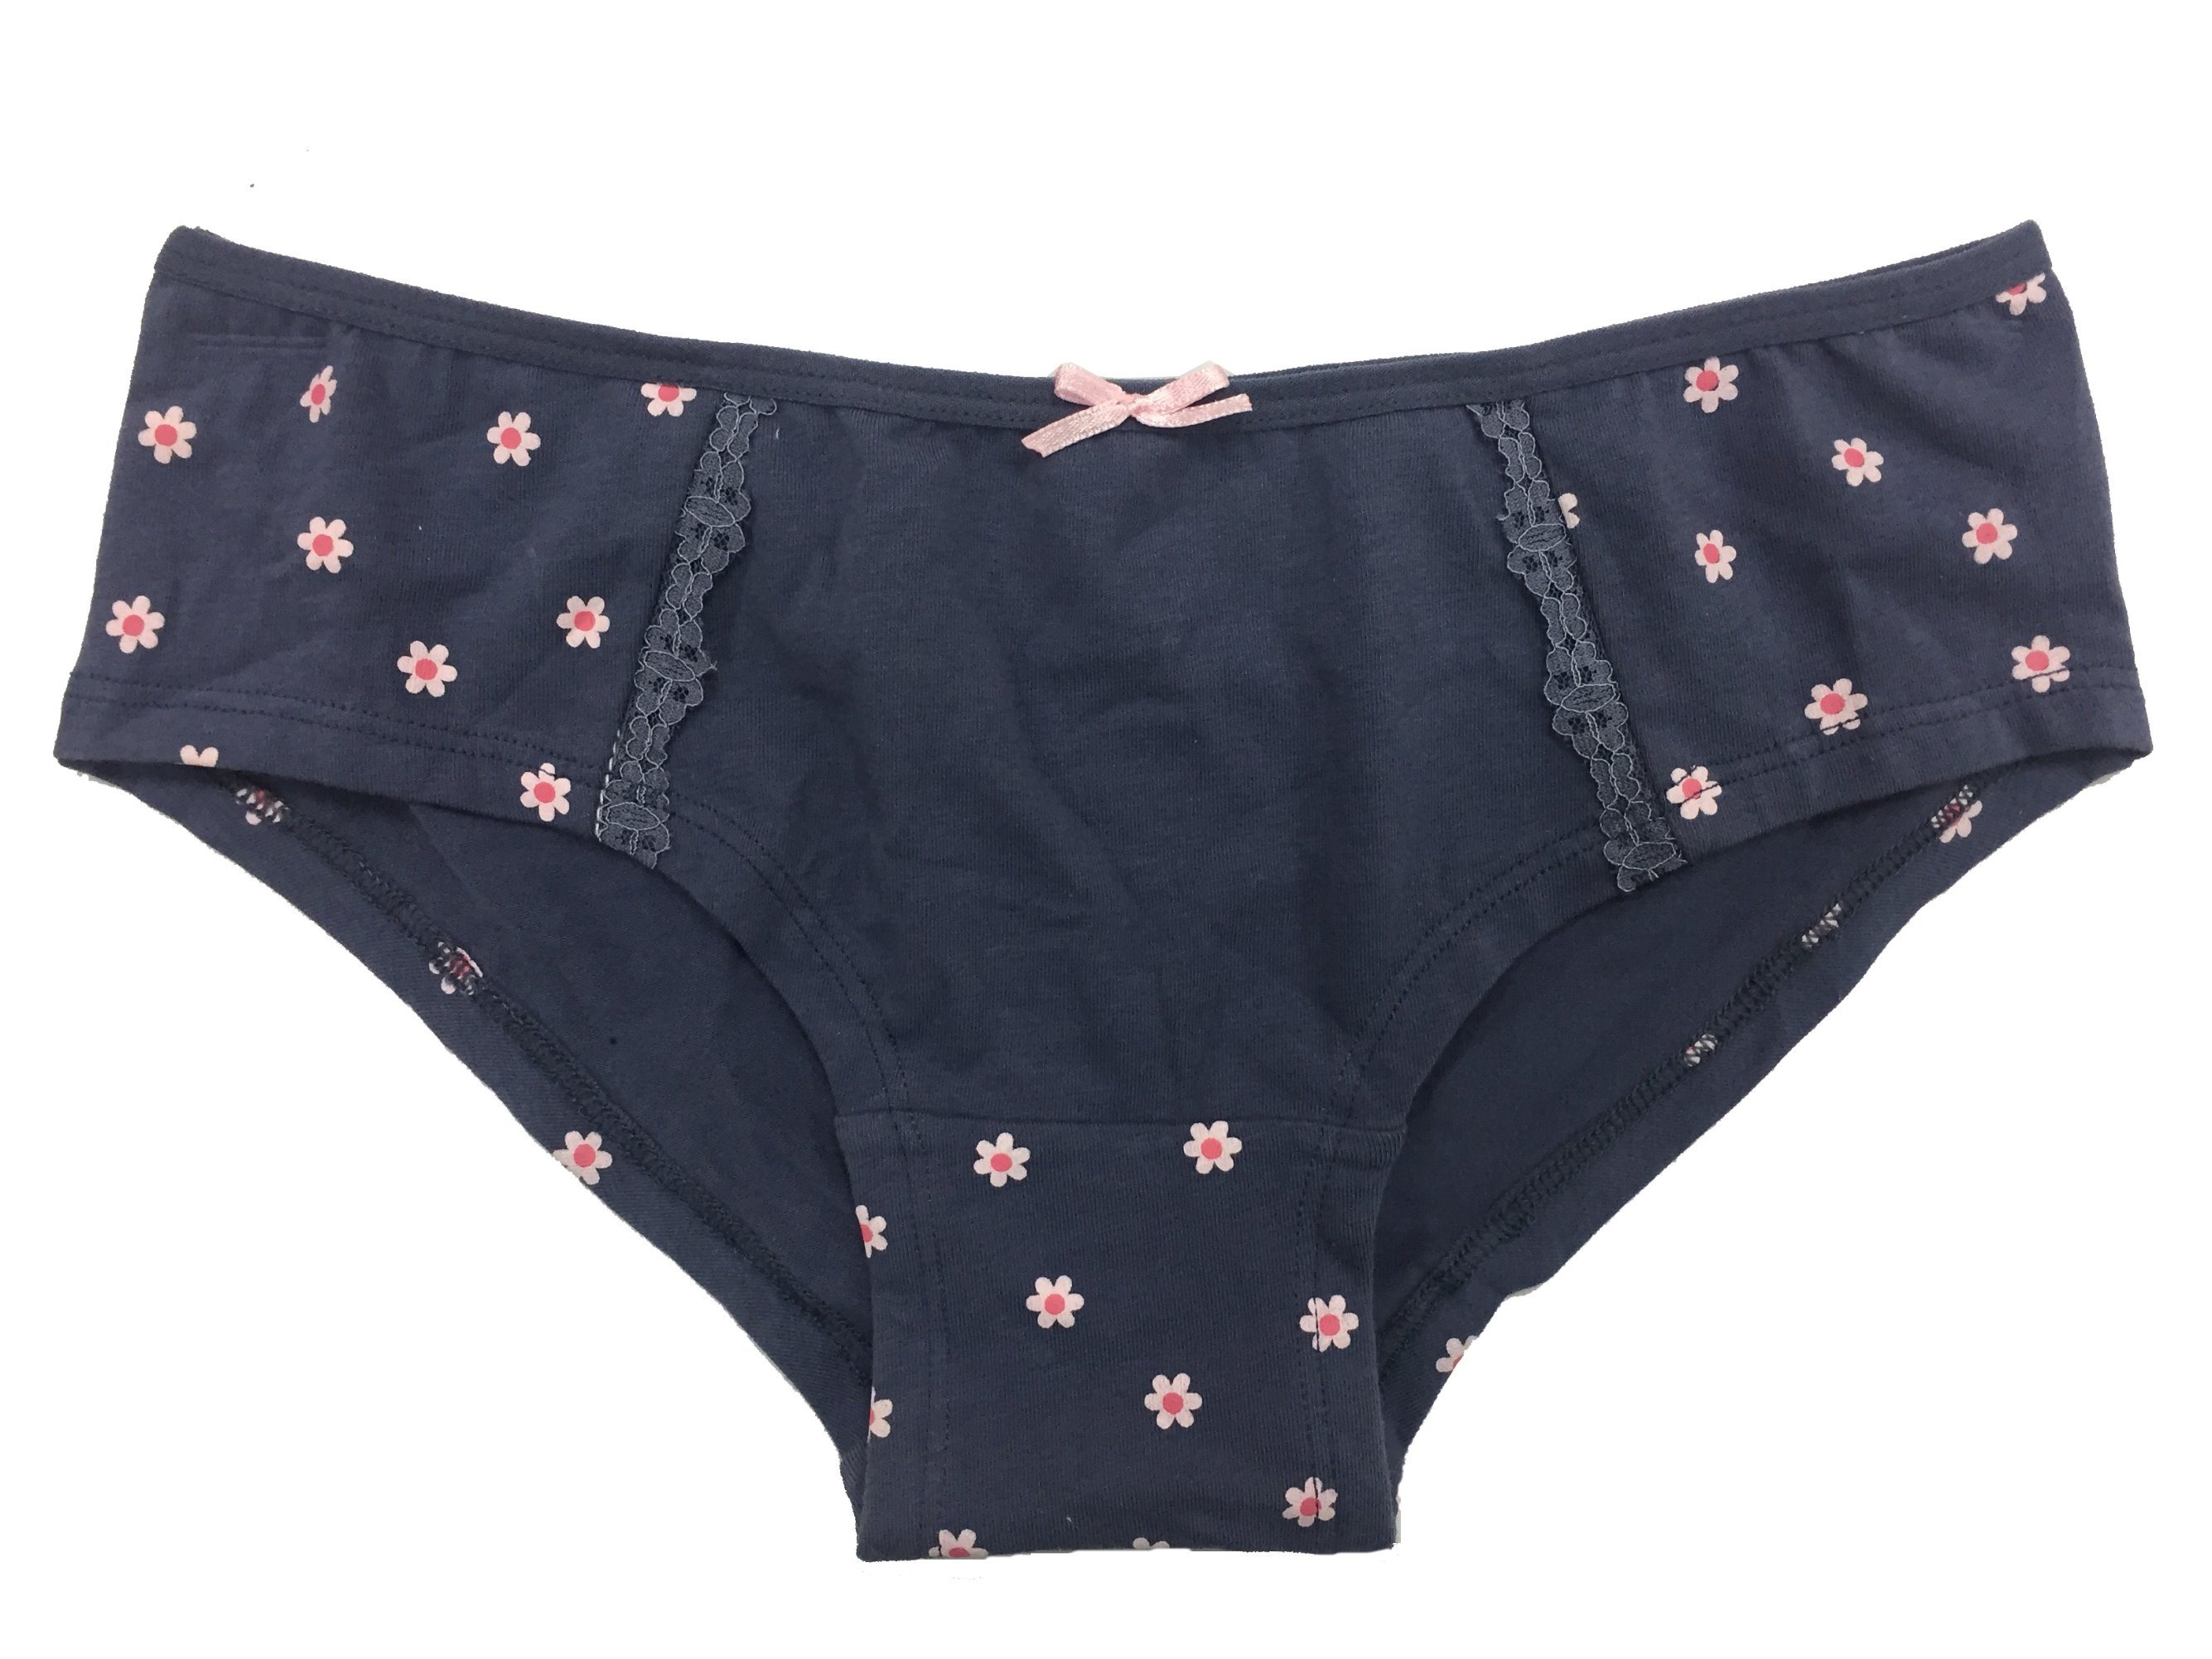 Cotton/Spandex Women Underwear, Popular Briefs